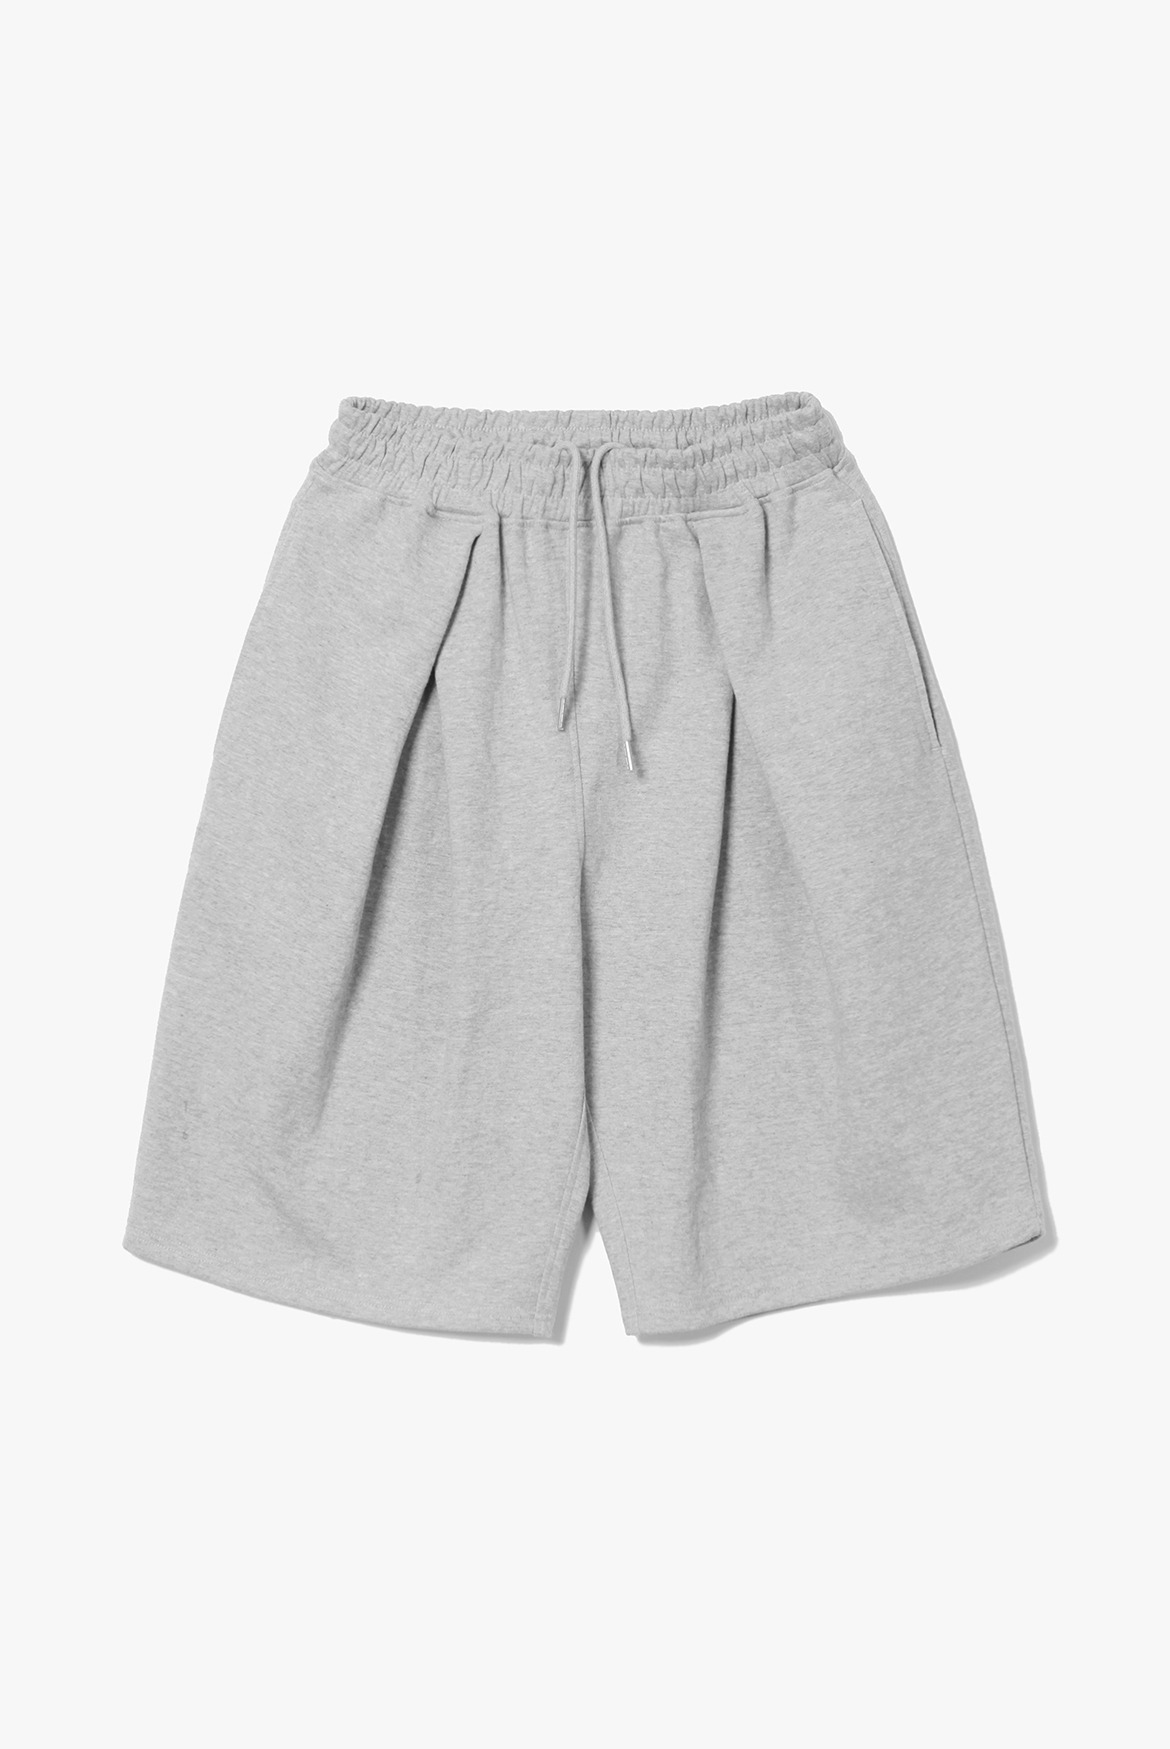 (7월 6일 예약배송) Bermuda Cross Sweat Shorts [Grey]